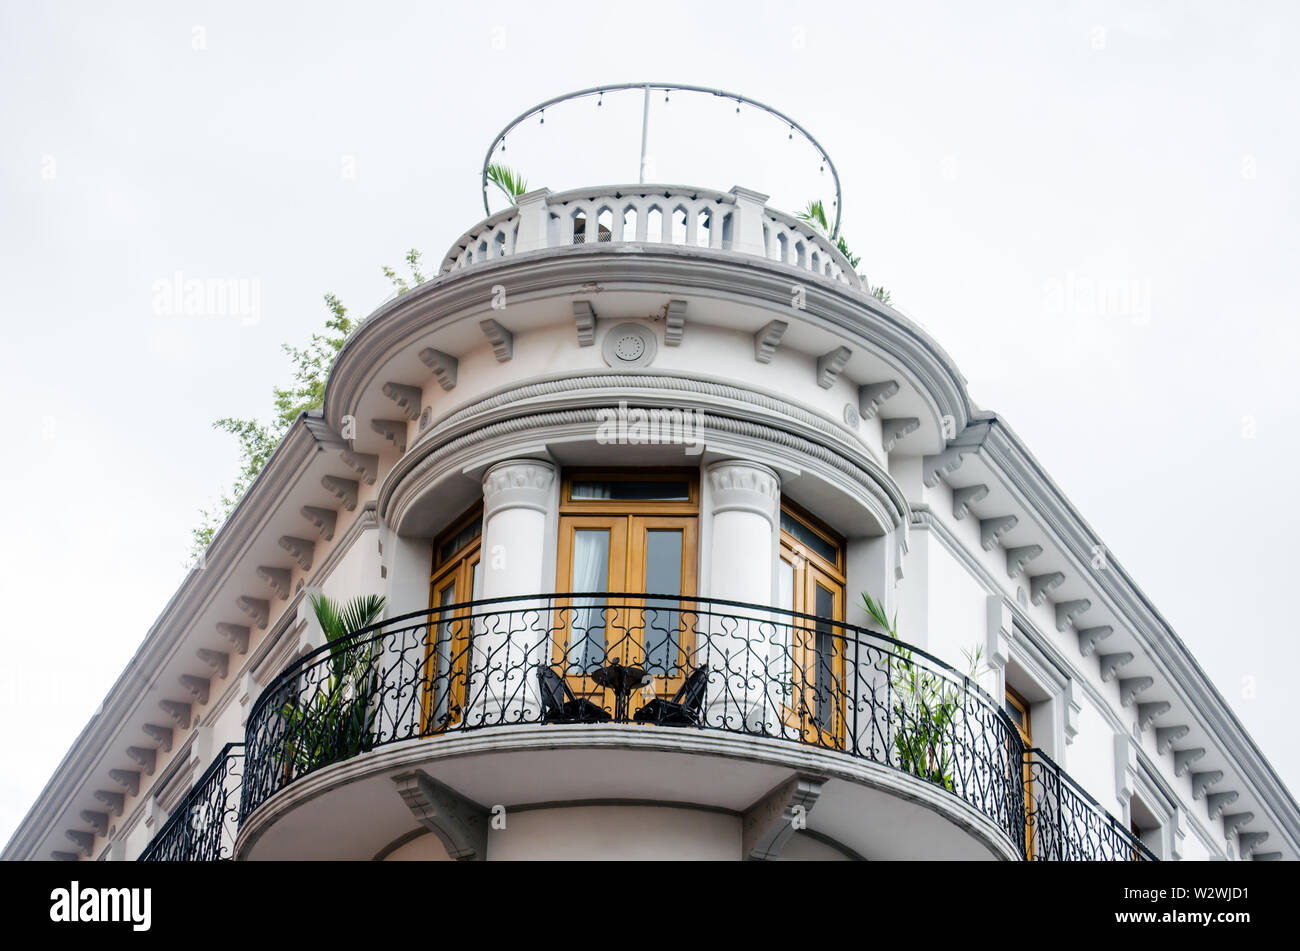 Charmants balcons dans Casco Viejo, le célèbre quartier historique de la ville de Panama et site du patrimoine mondial depuis 1997 Banque D'Images